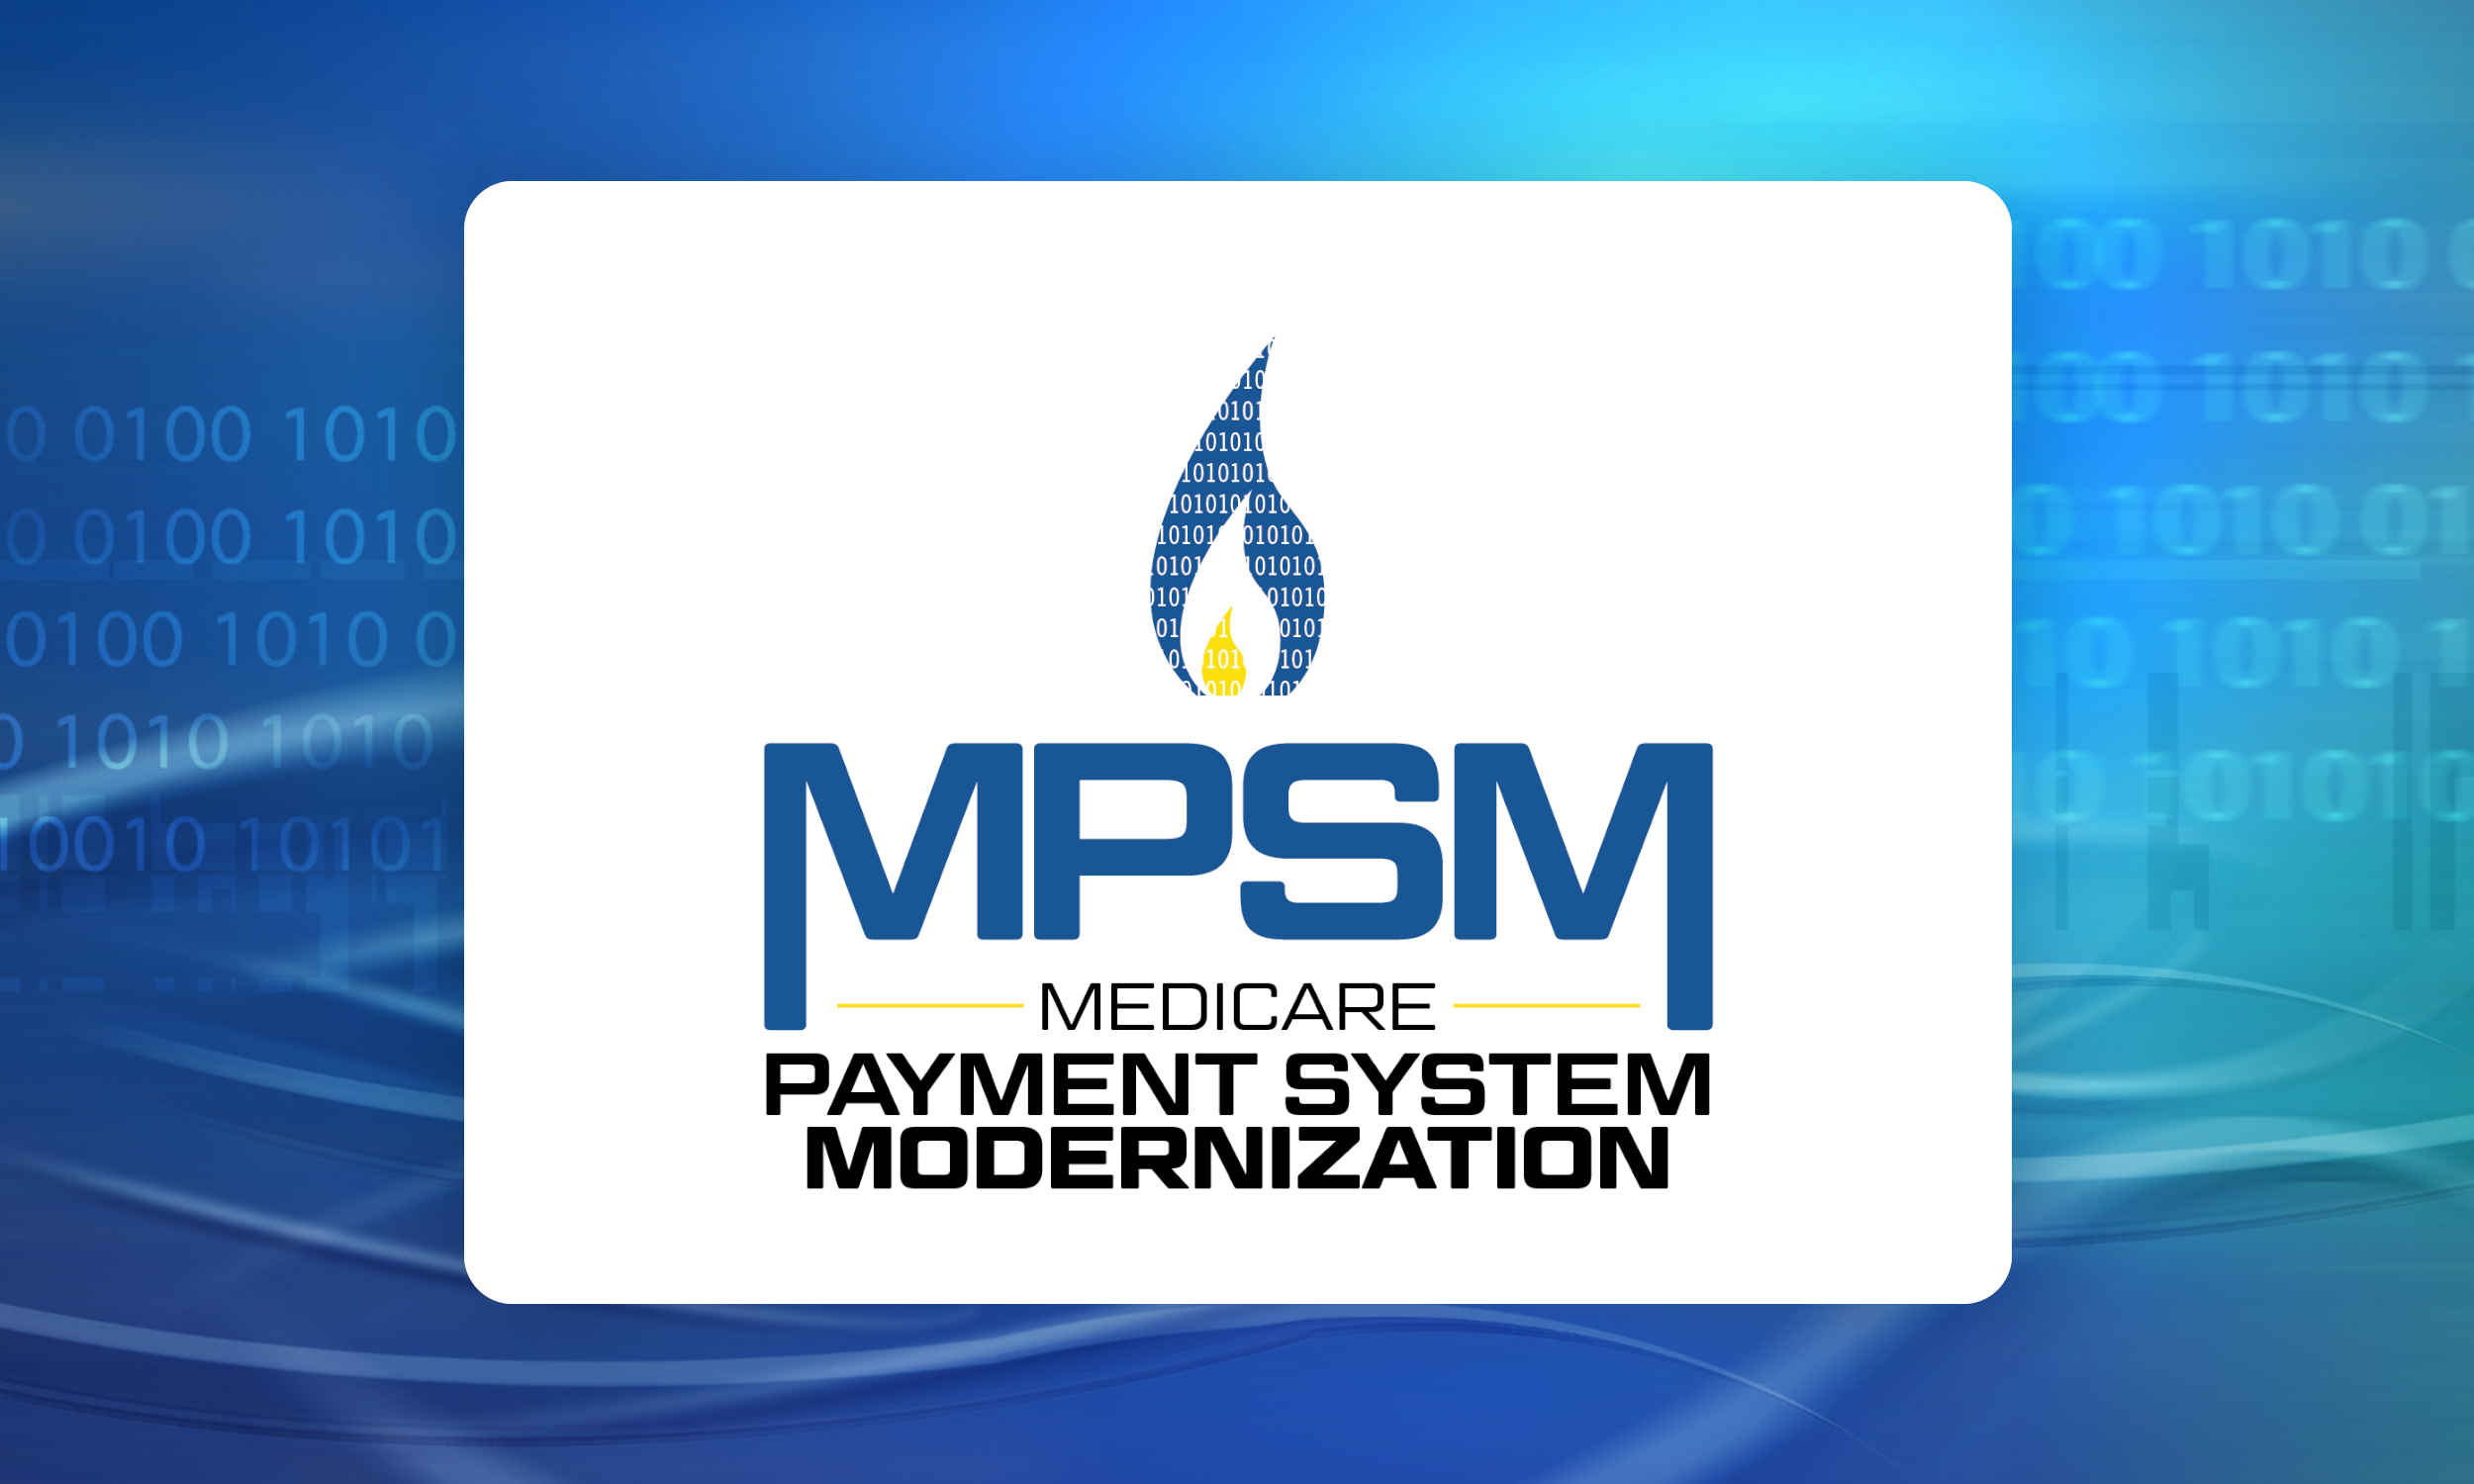 Medicare Payment System Modernization logo